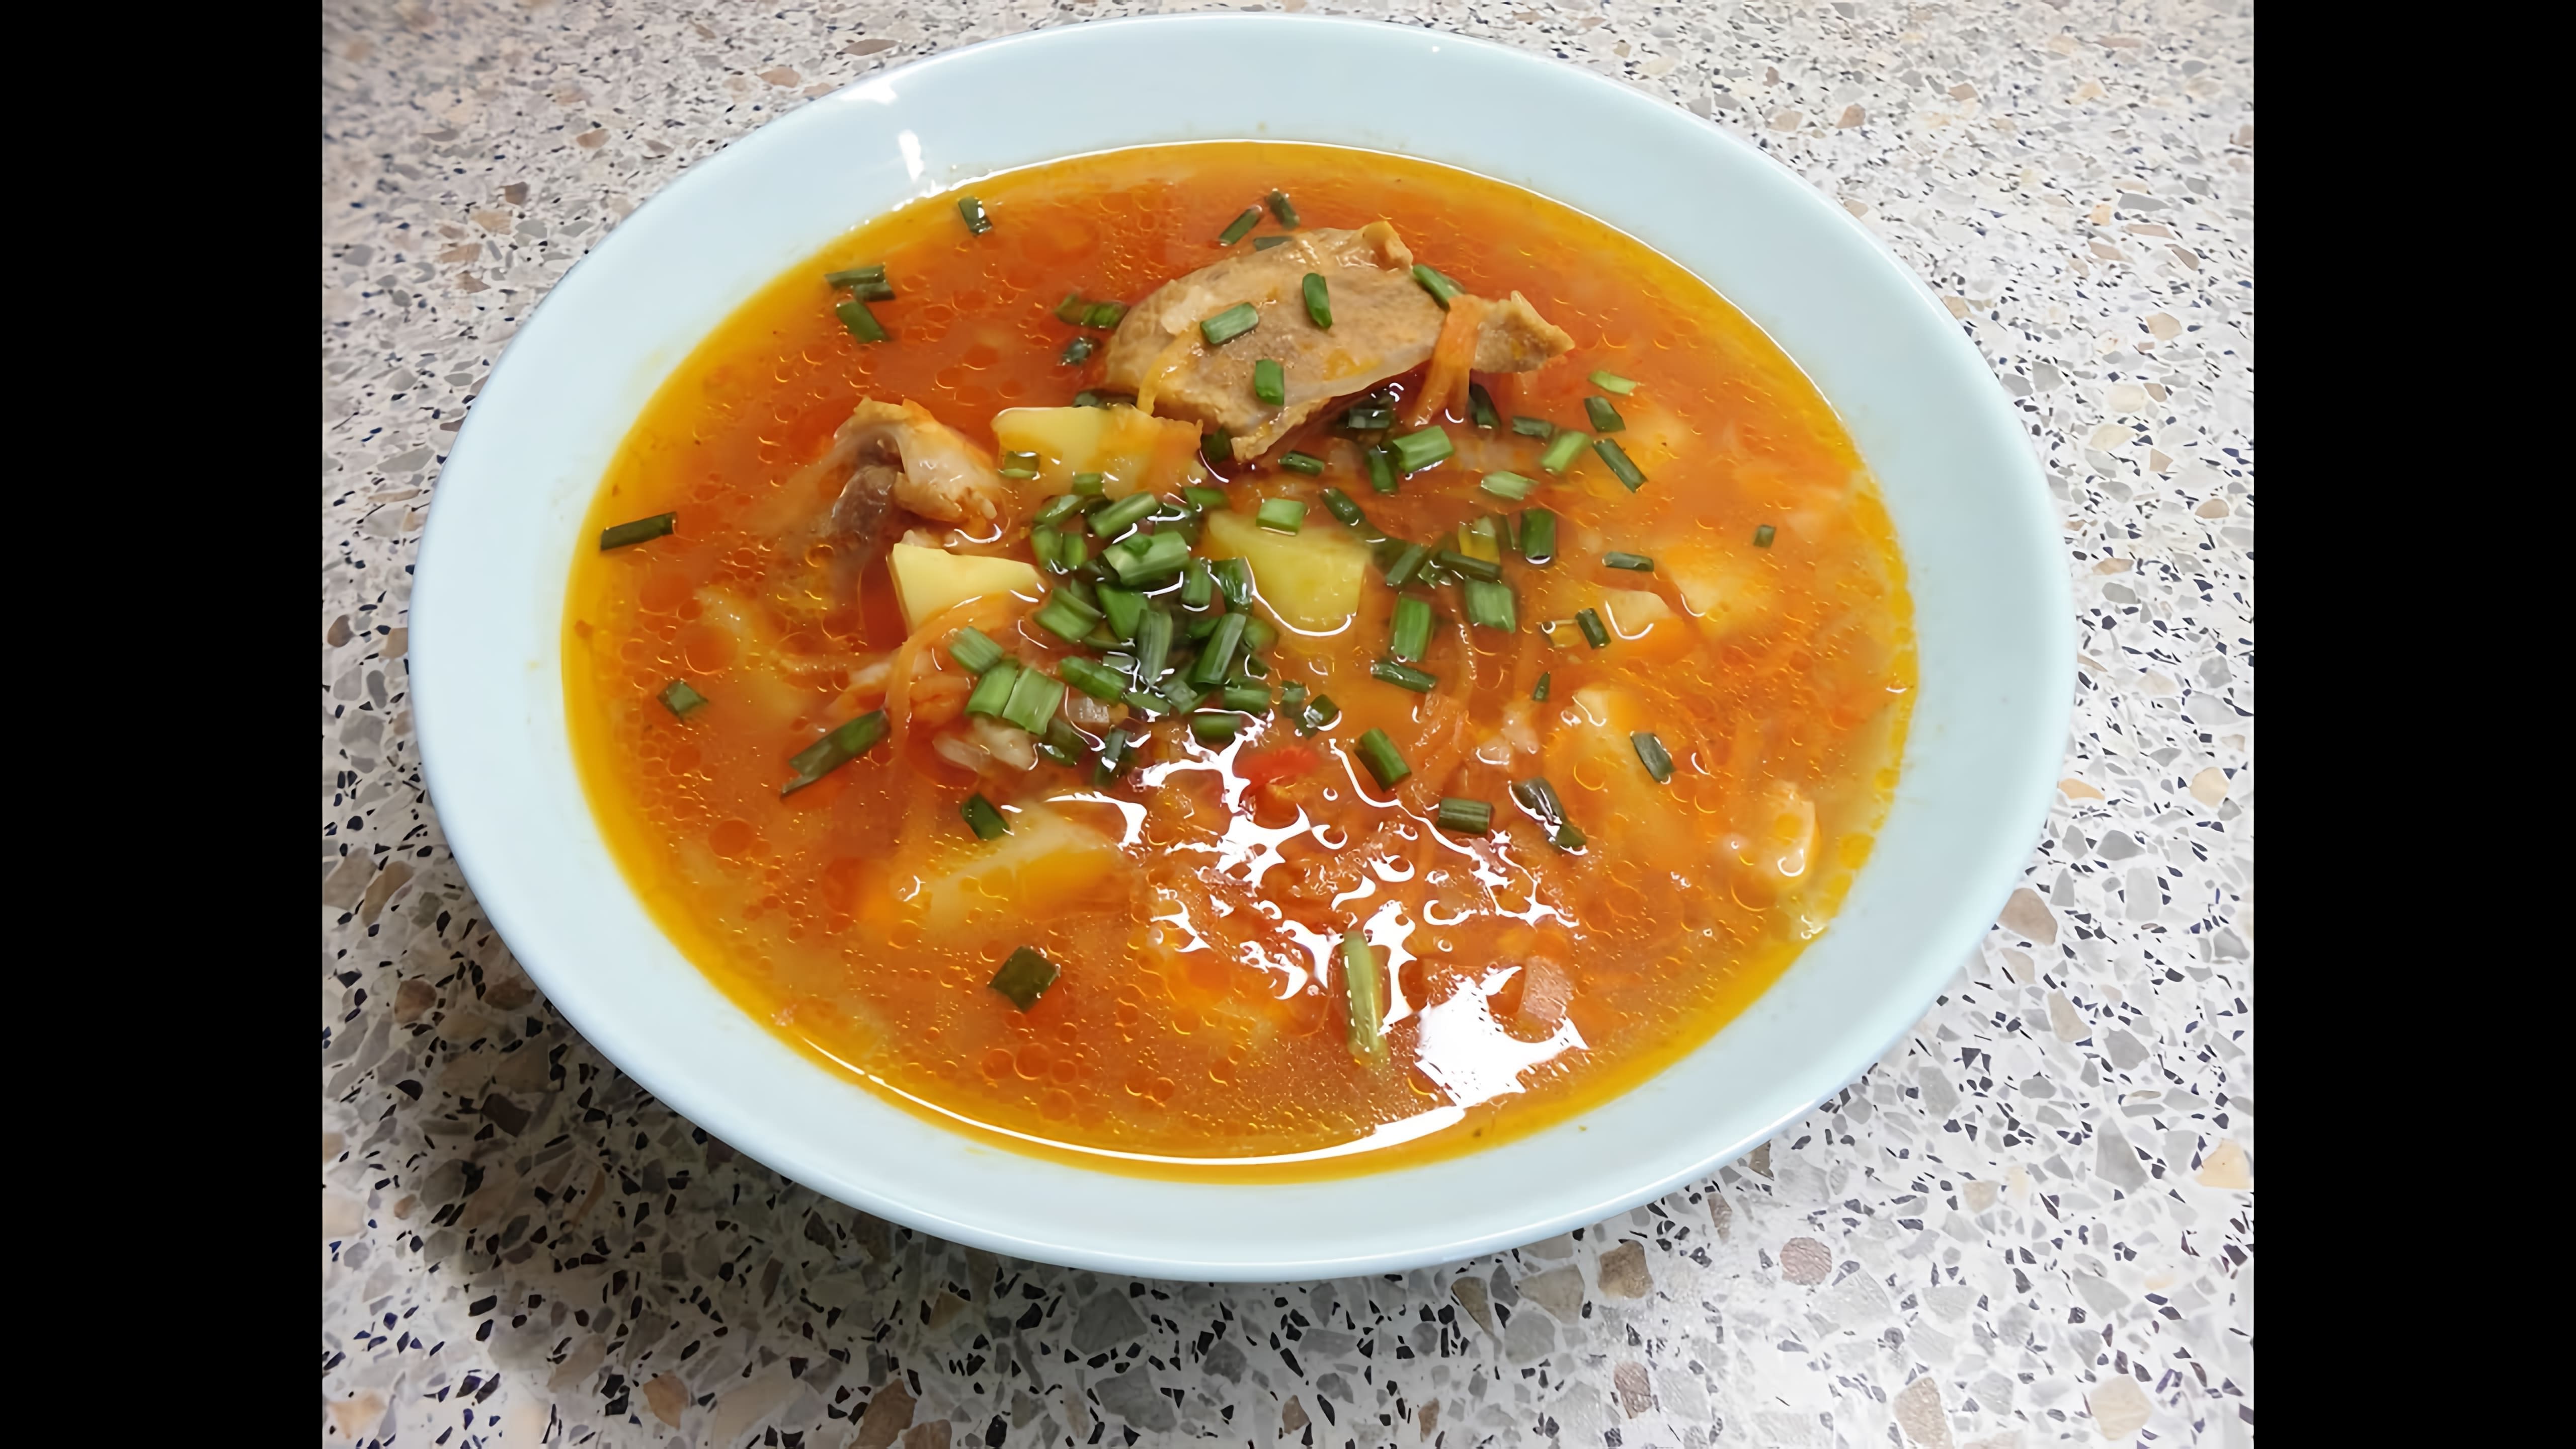 В данном видео демонстрируется простой и вкусный рецепт приготовления супа харчо